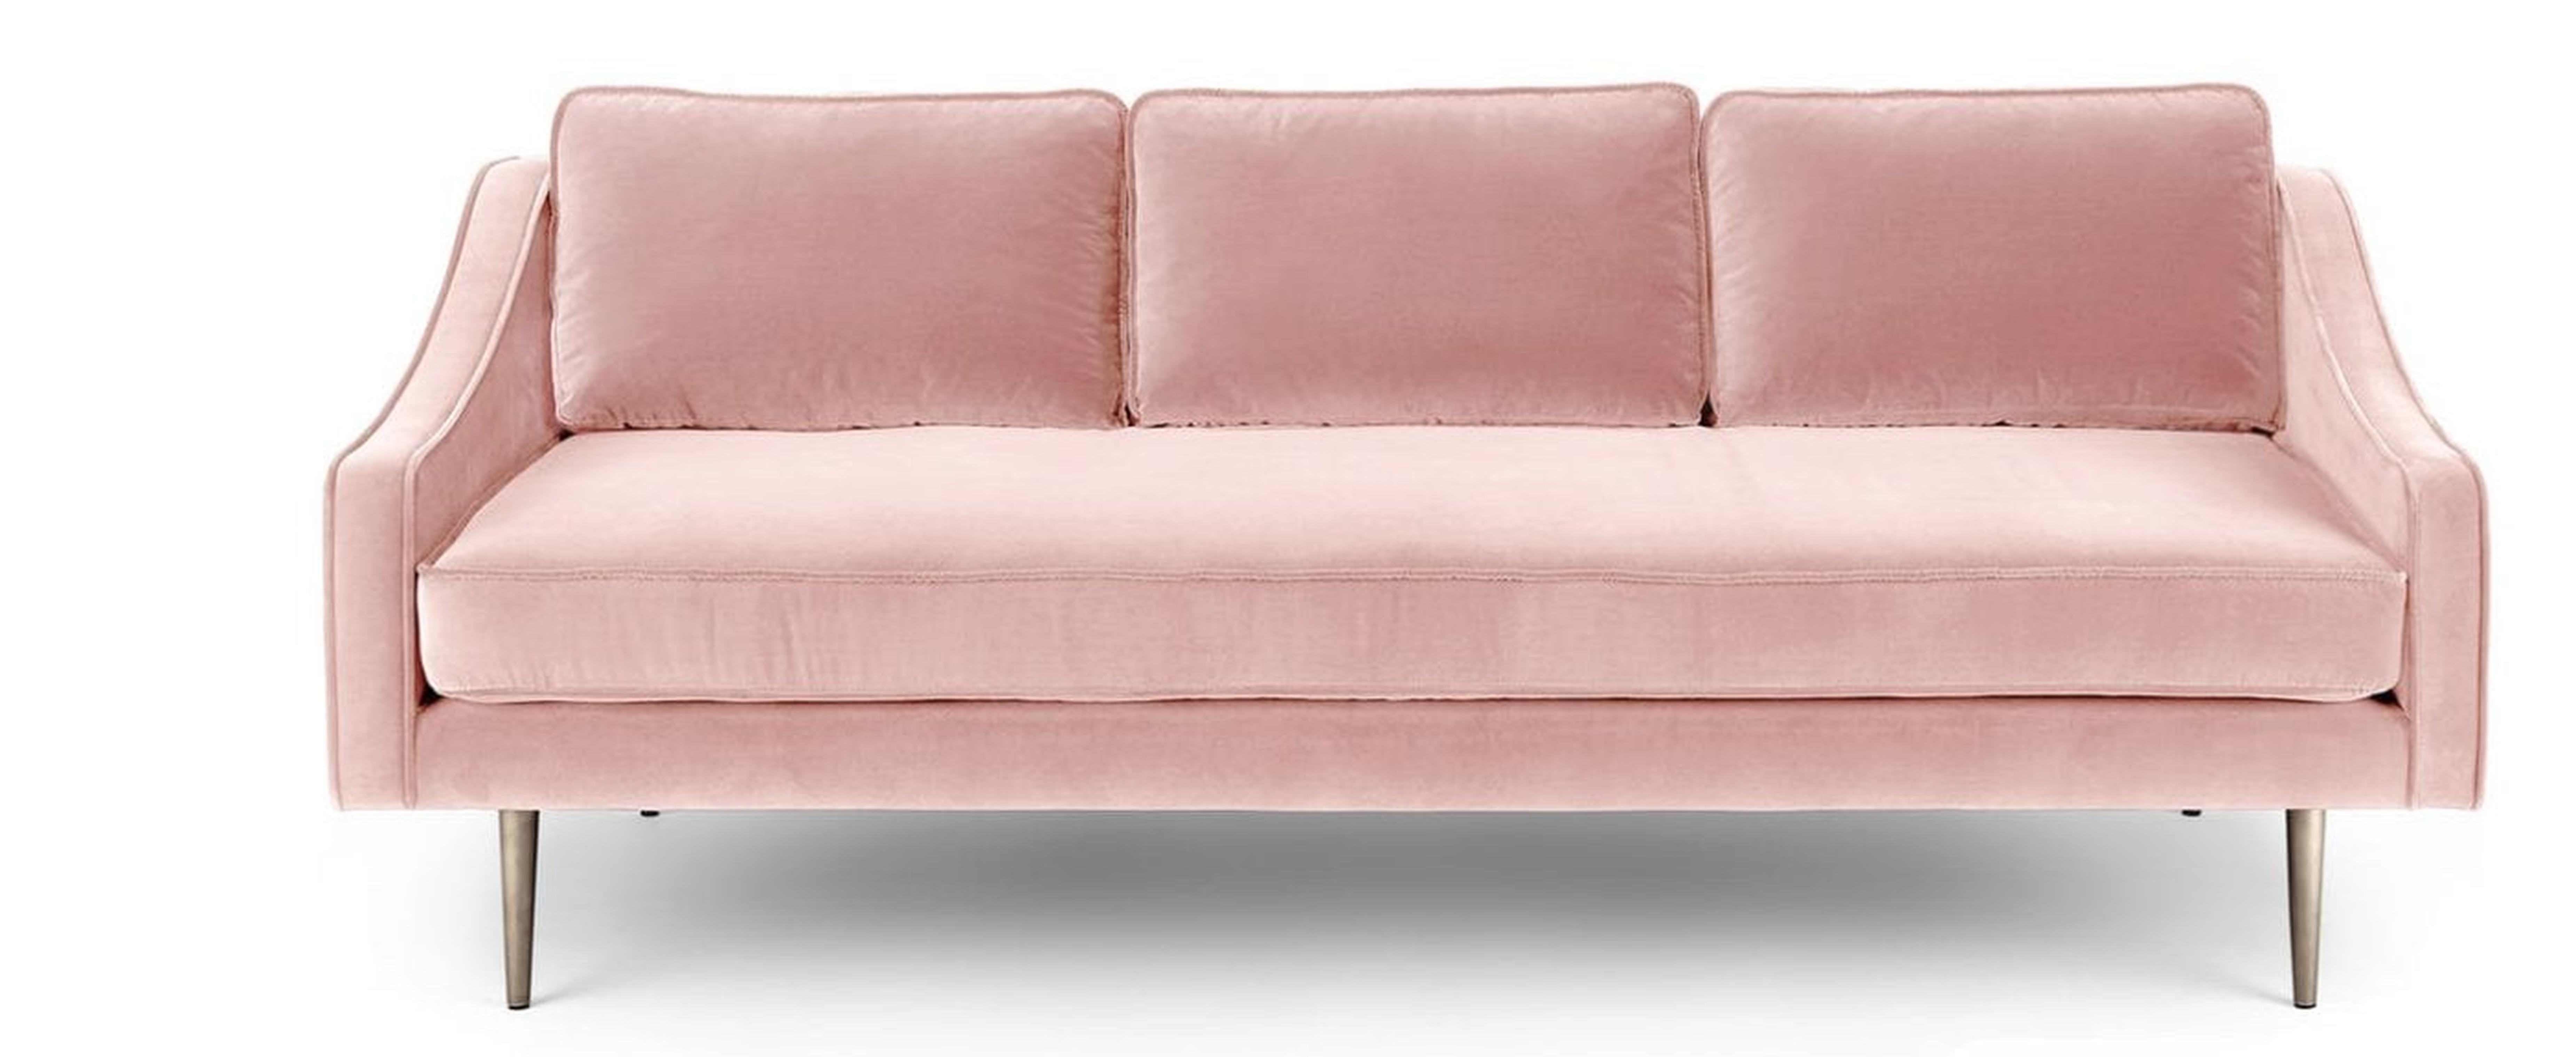 Mirage Blush Pink Sofa - Article